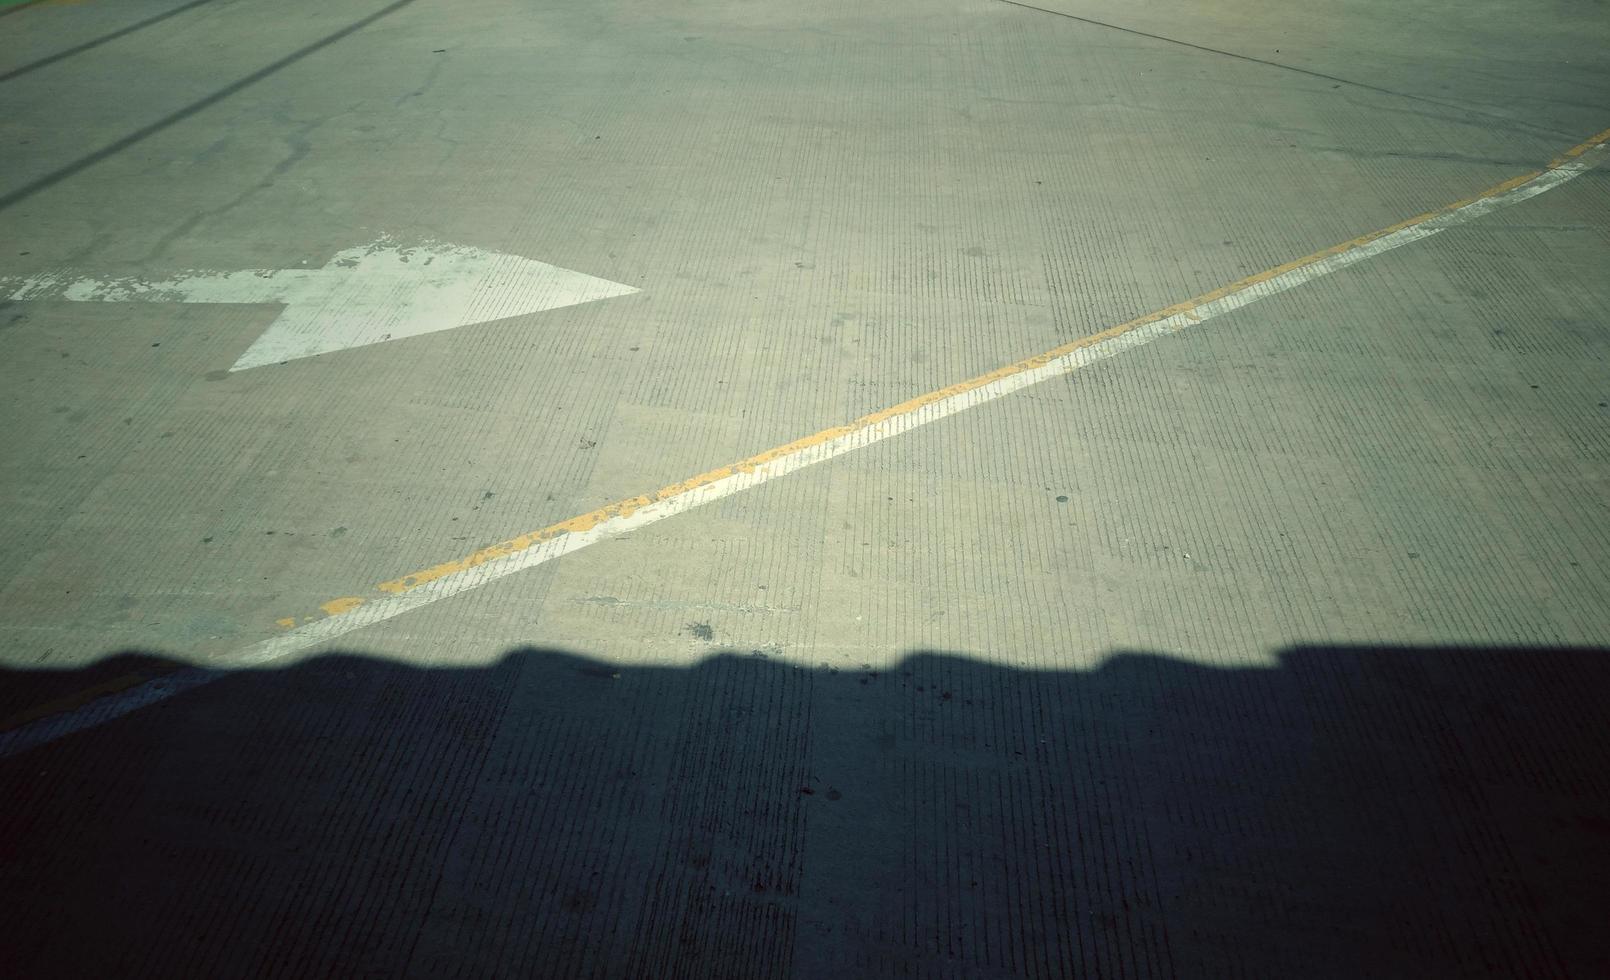 l'ombra nera sul cemento con una freccia bianca che punta a destra, dando l'idea della direzione. foto